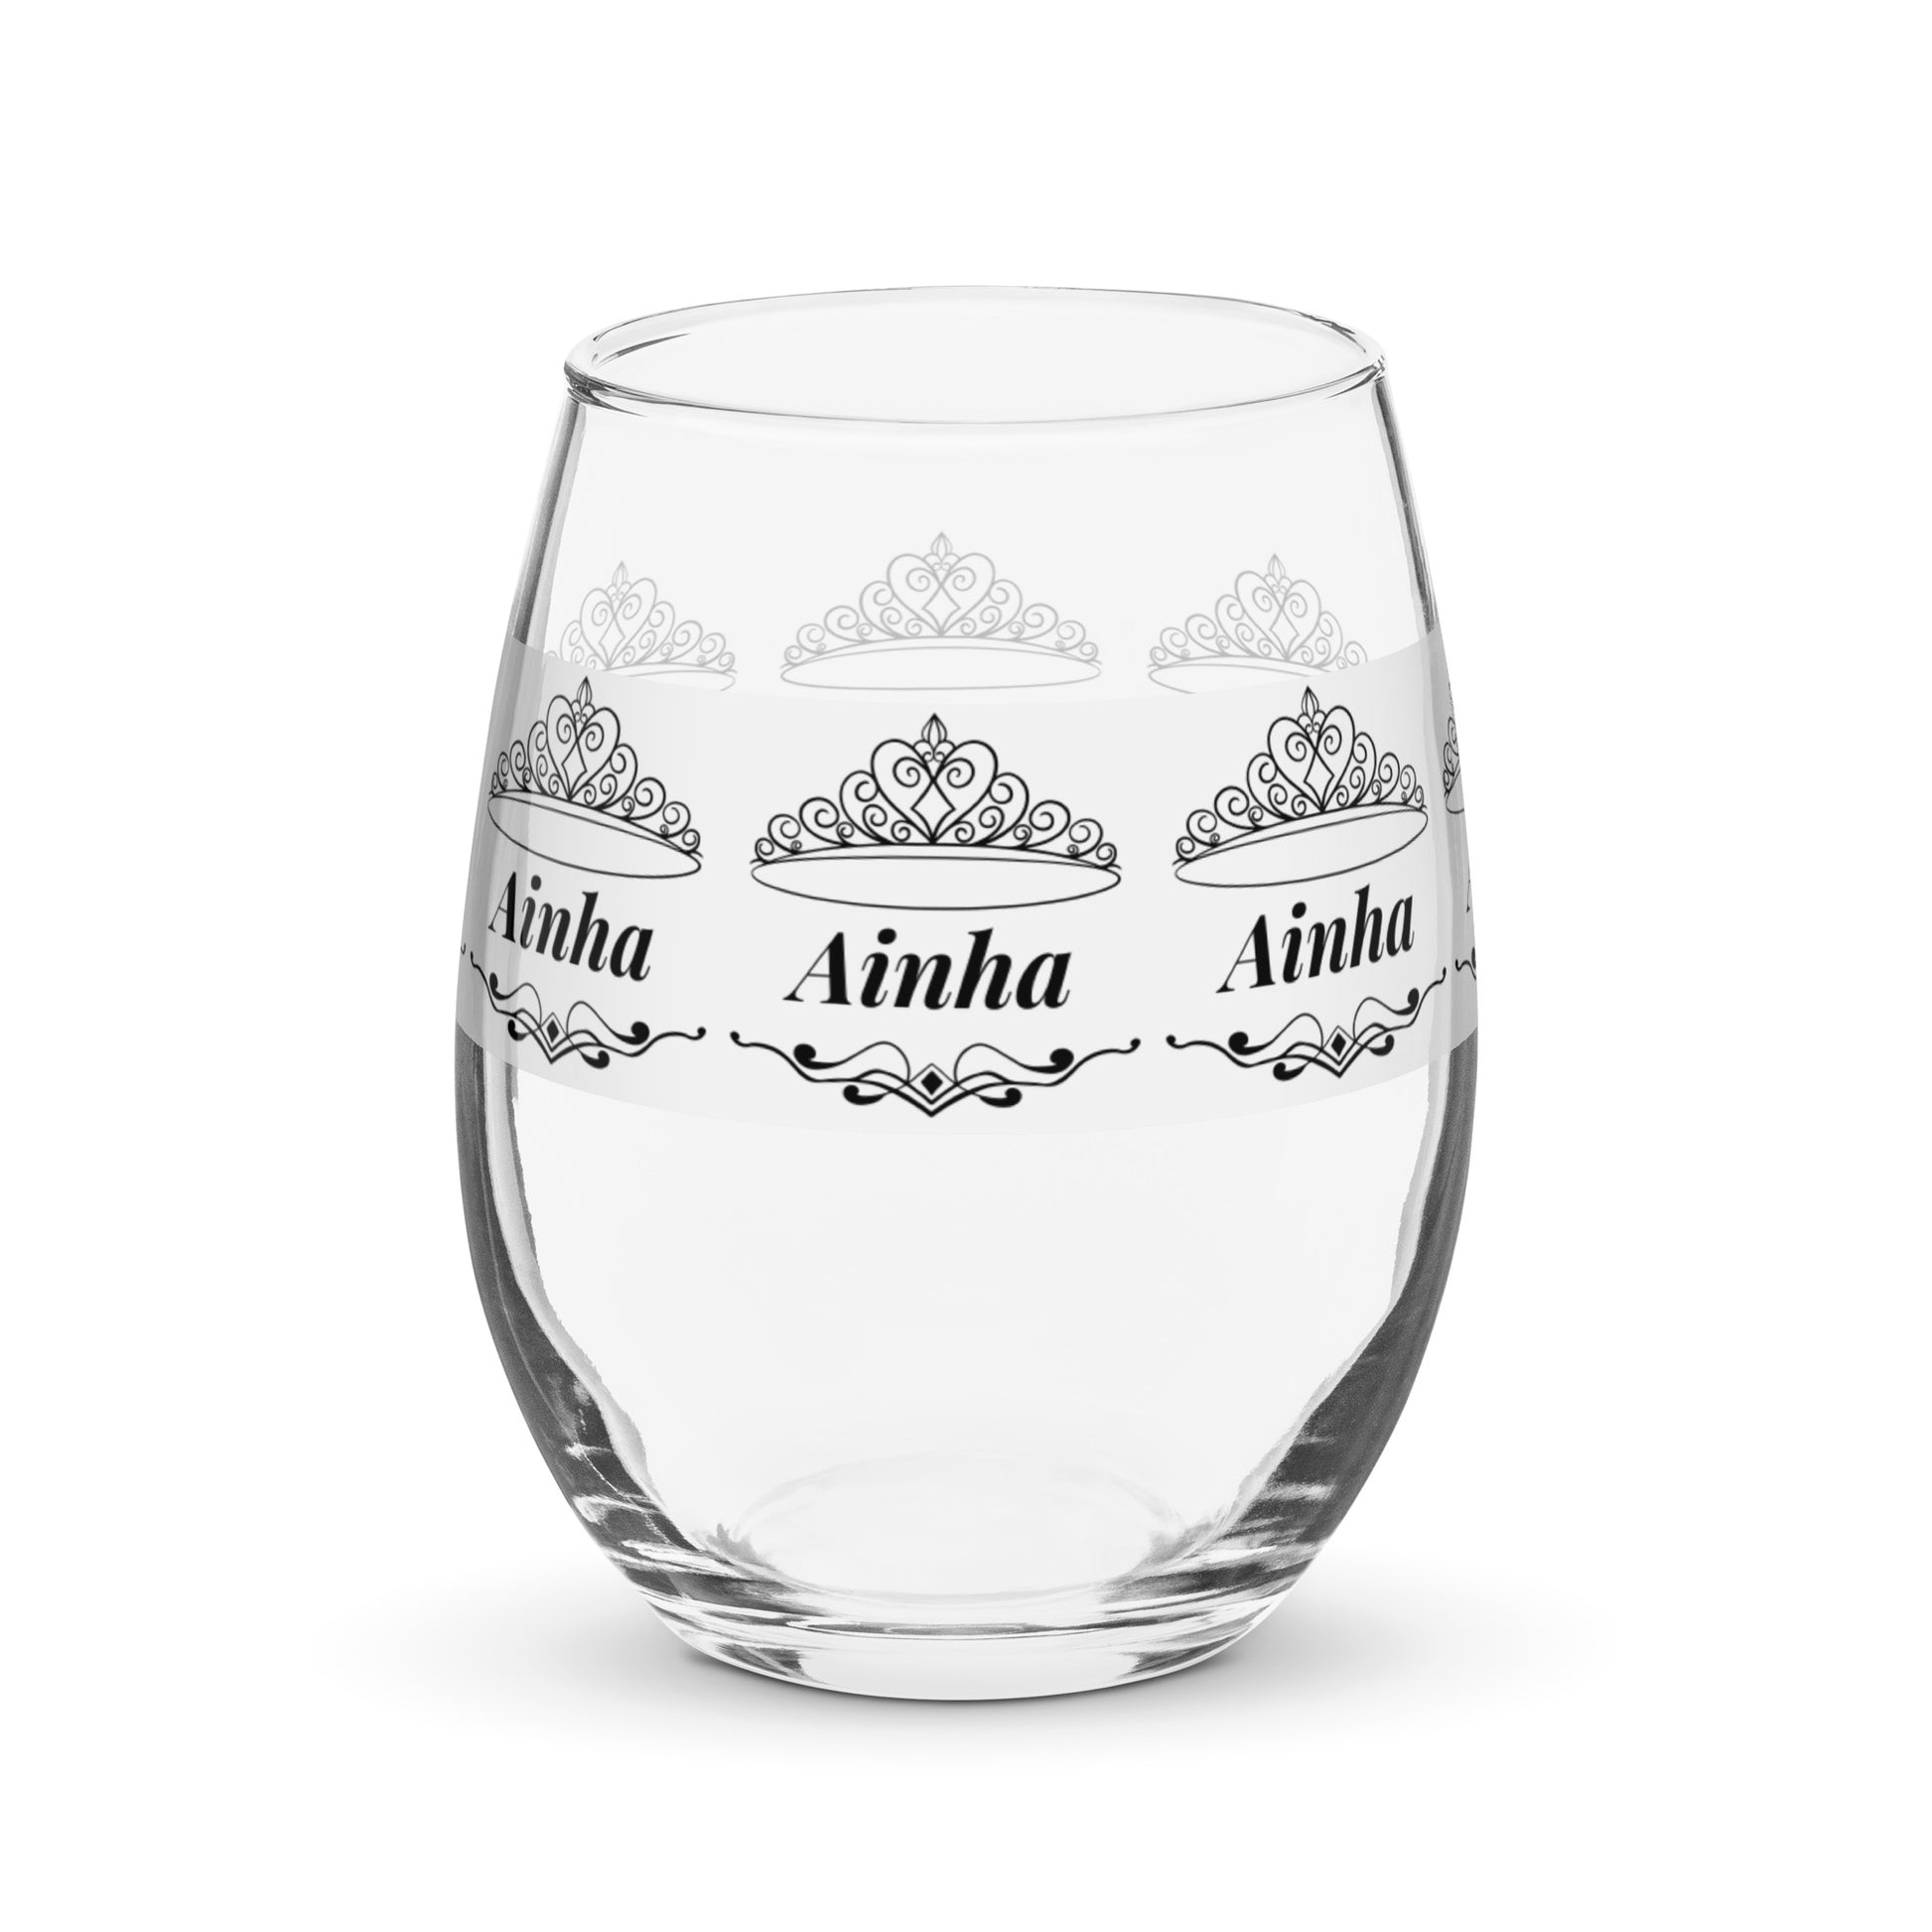 Ainha name wine glass personalized wine glass wine glass